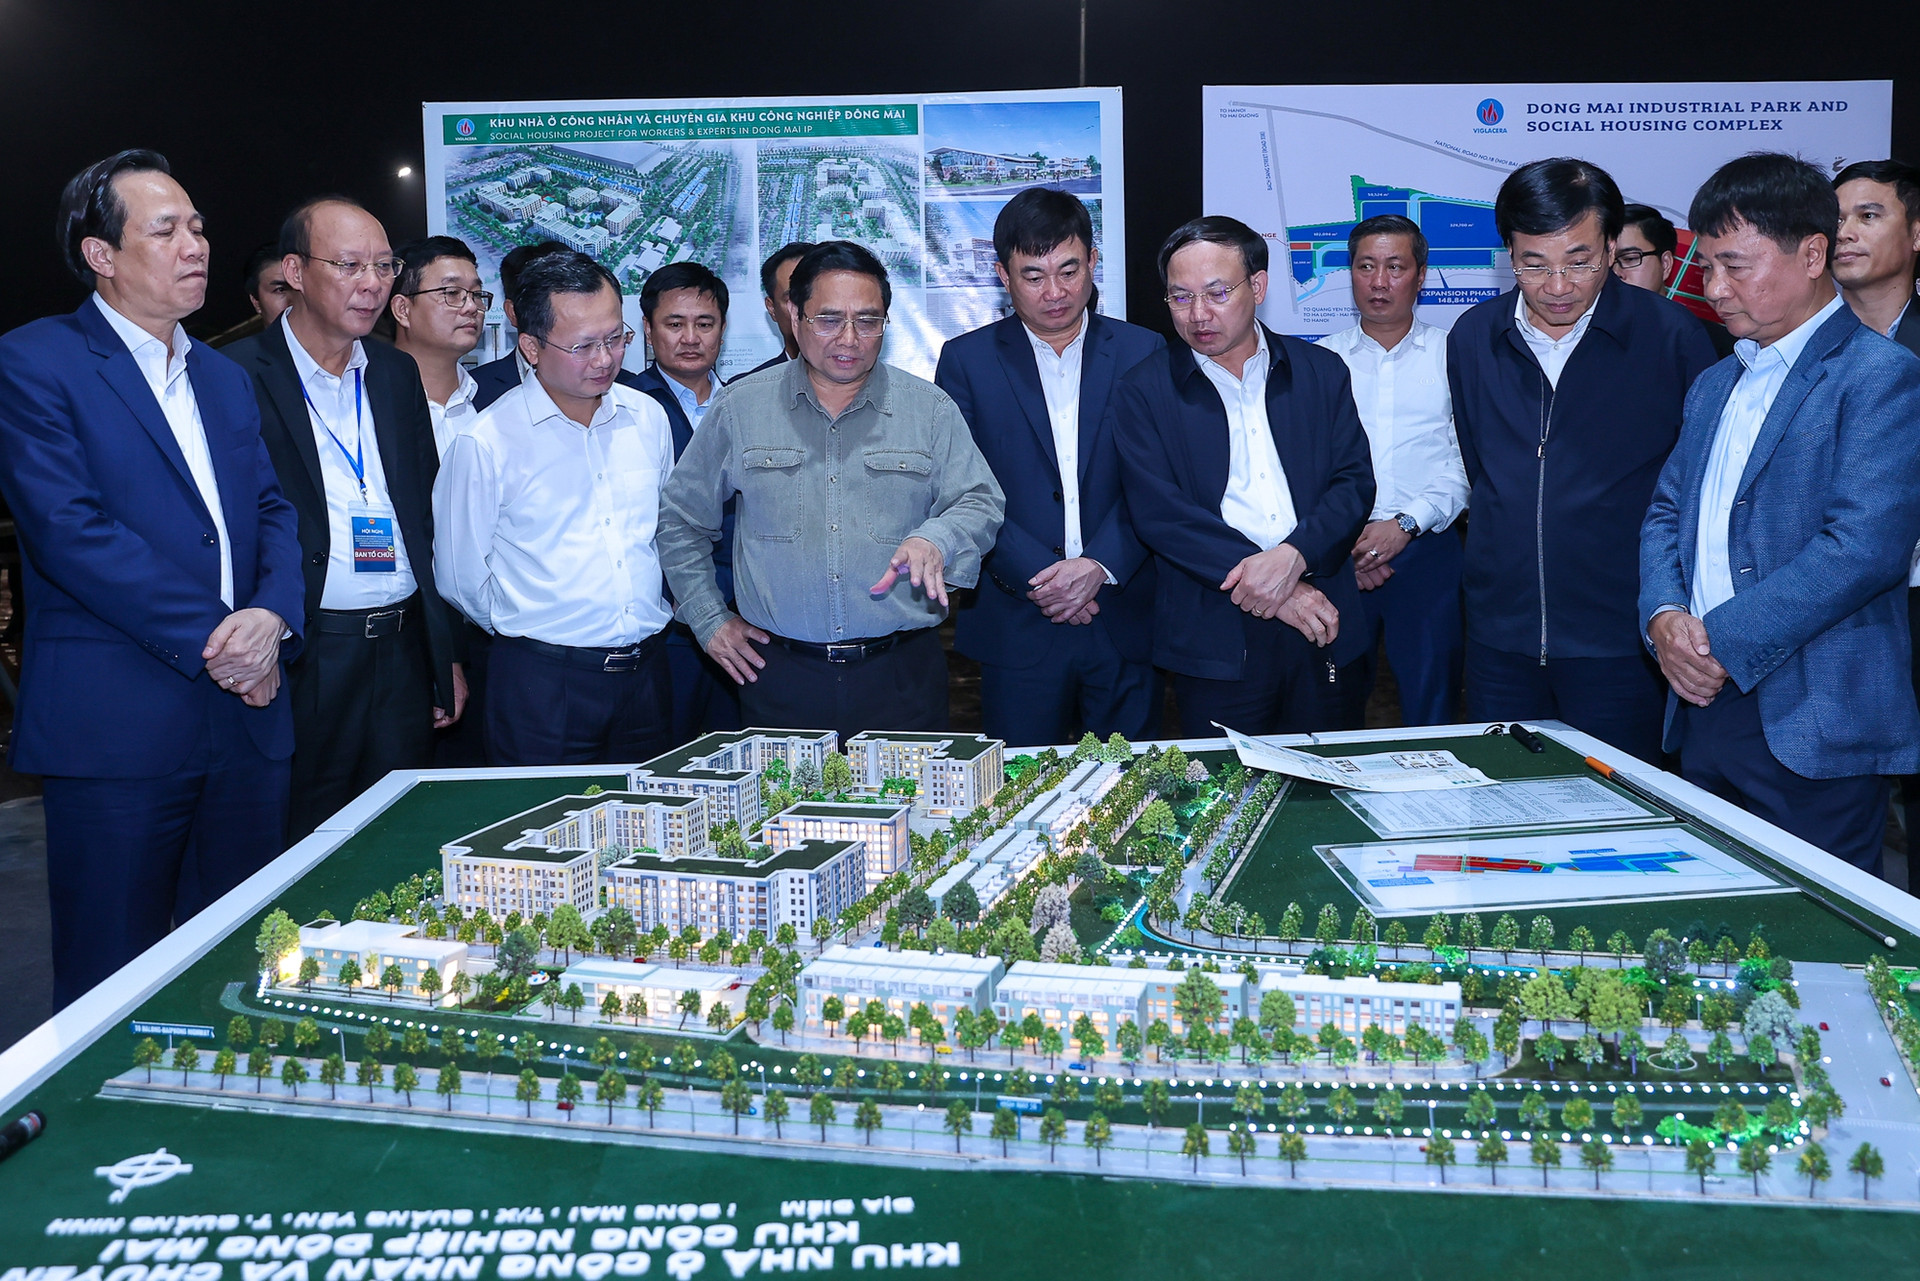 Thủ tướng khảo sát khu công nghiệp, dự án nhà ở công nhân tại Quảng Ninh - Ảnh 1.